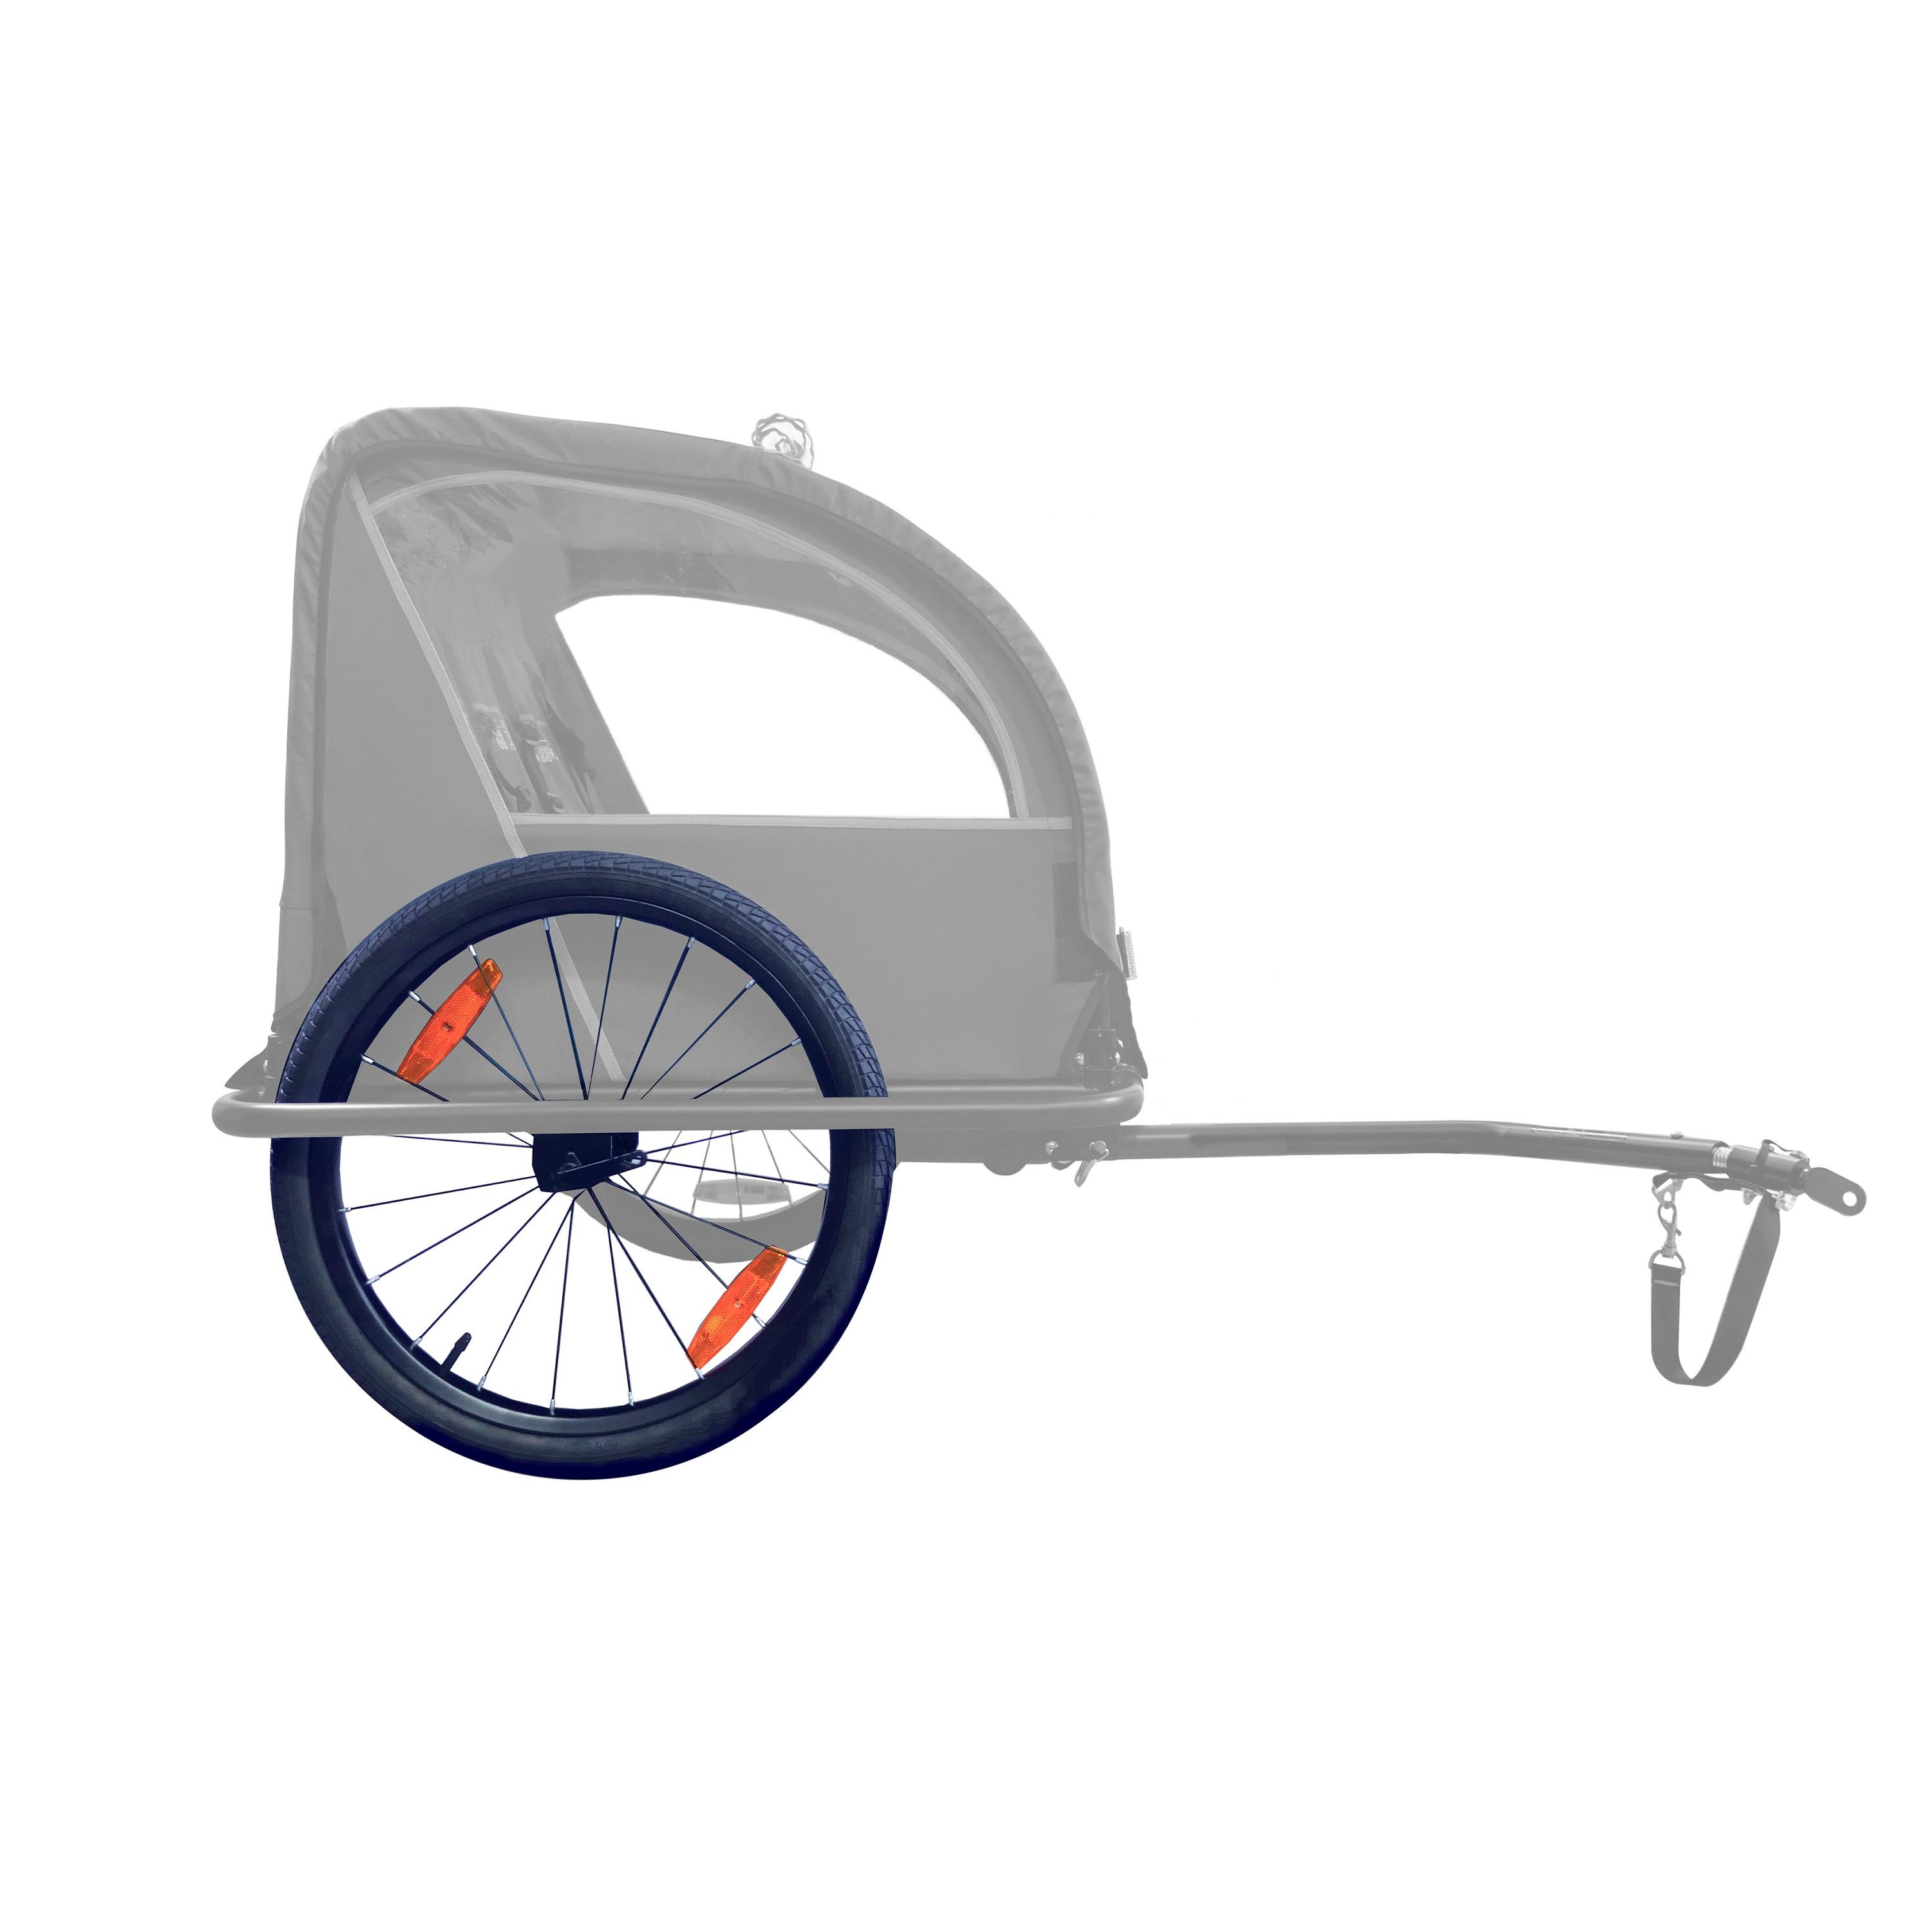 Крыльчатка (комплект) для прицепа Bike Original 2020 qdпатрик крышка переднего и заднего бампера прицепа бампер крышка крюка прицепа для ford mondeo 2019 2020